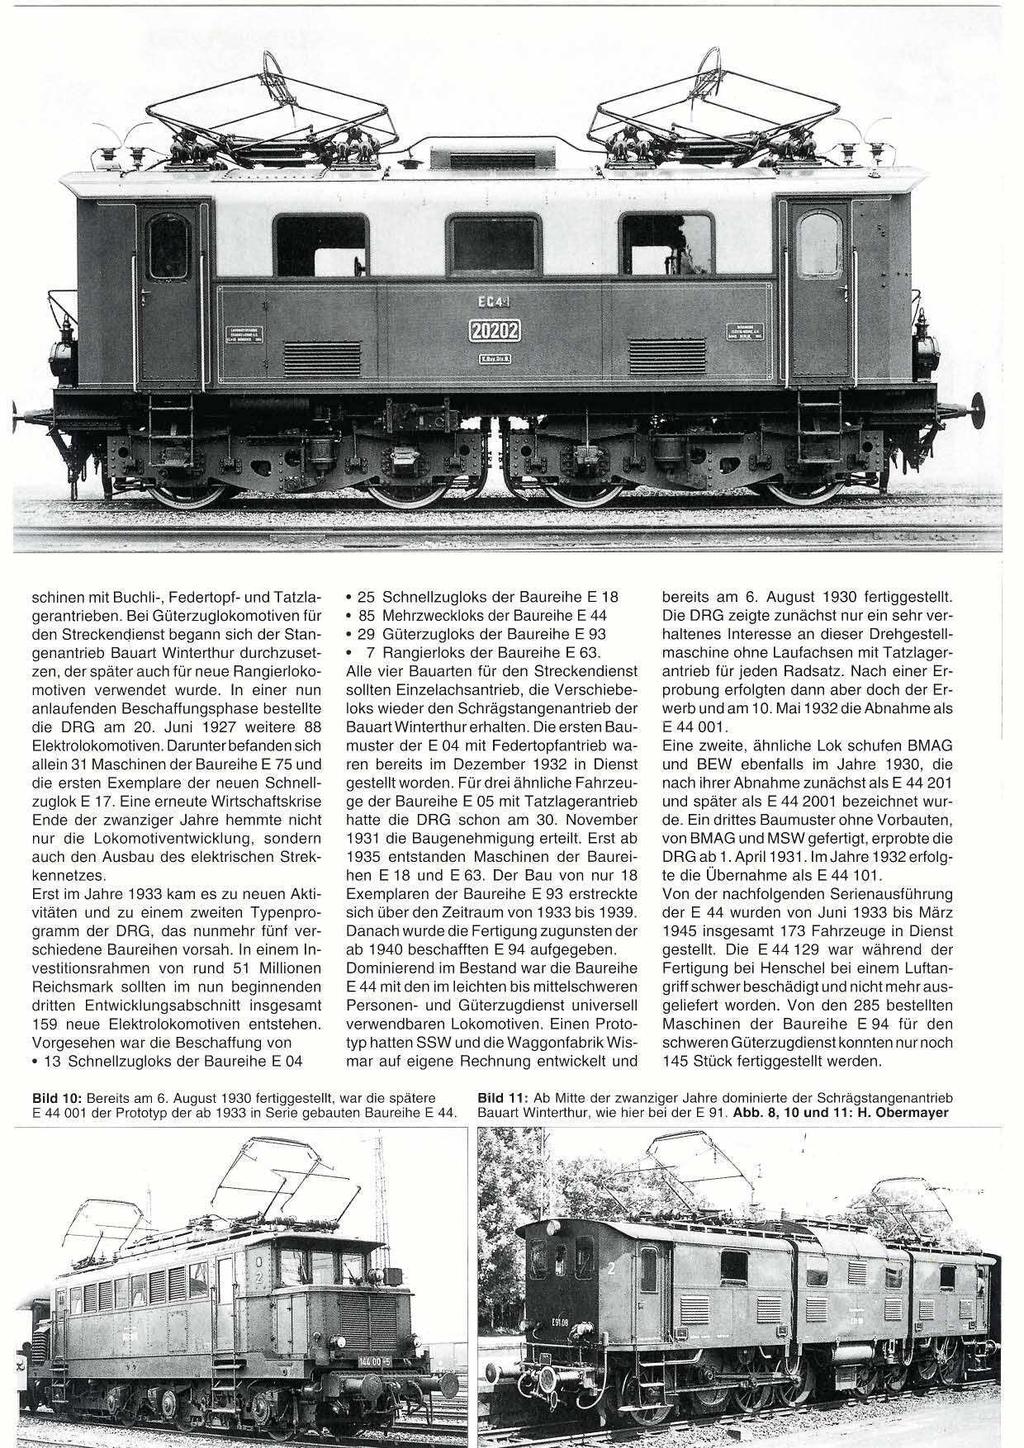 schinen mit Buchli-, Federtopf- und Tatzla- 25 Schnellzugloks der Baureihe E 18 bereits am 6. August 1930 fertiggestellt. gerantrieben.